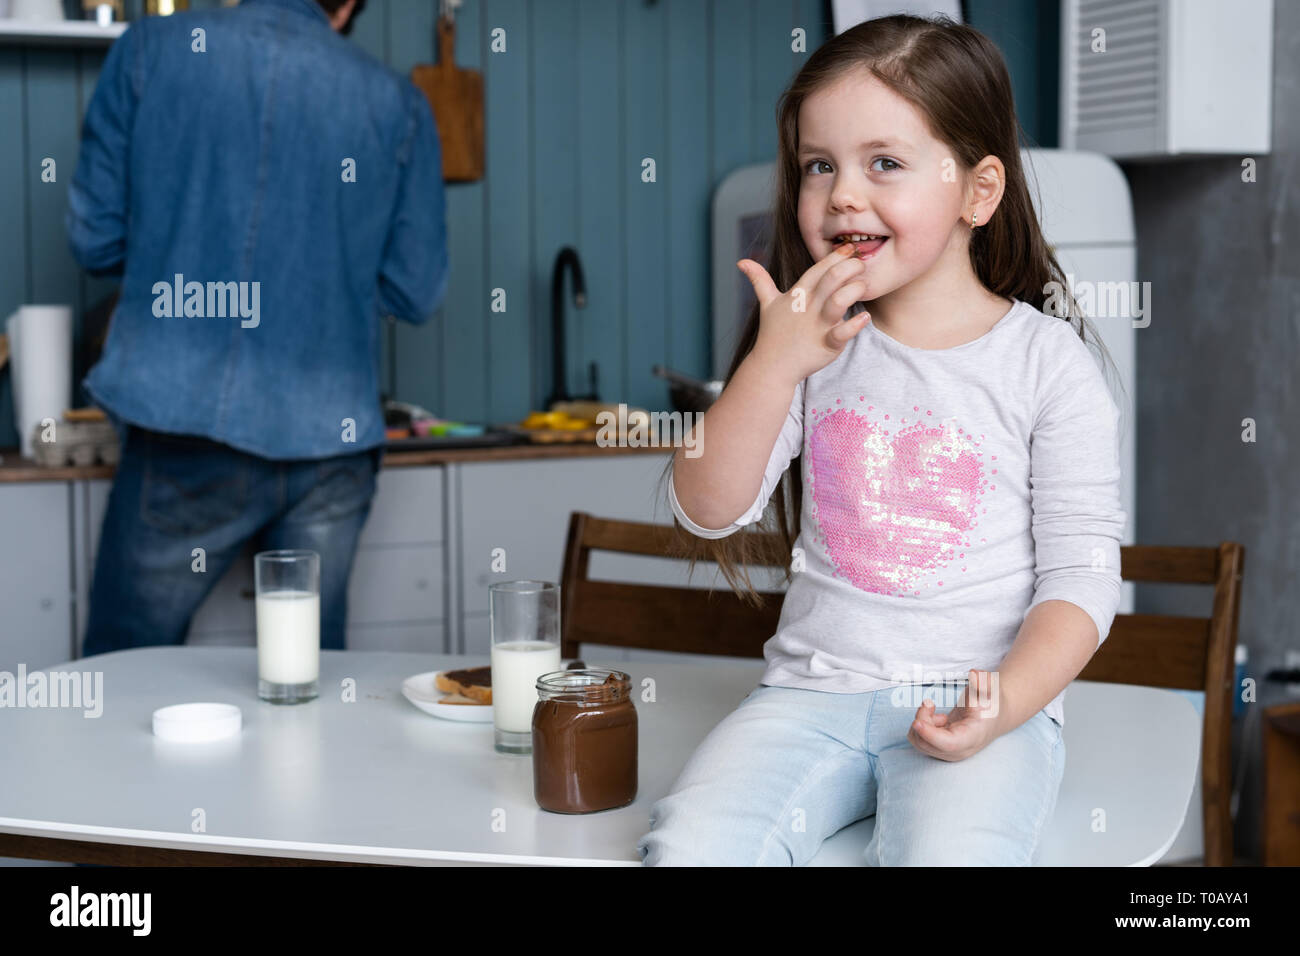 Glücklich lächelnde Mädchen essen Sandwich zum Frühstück, und wenn man die Kamera in der Küche Stockfoto